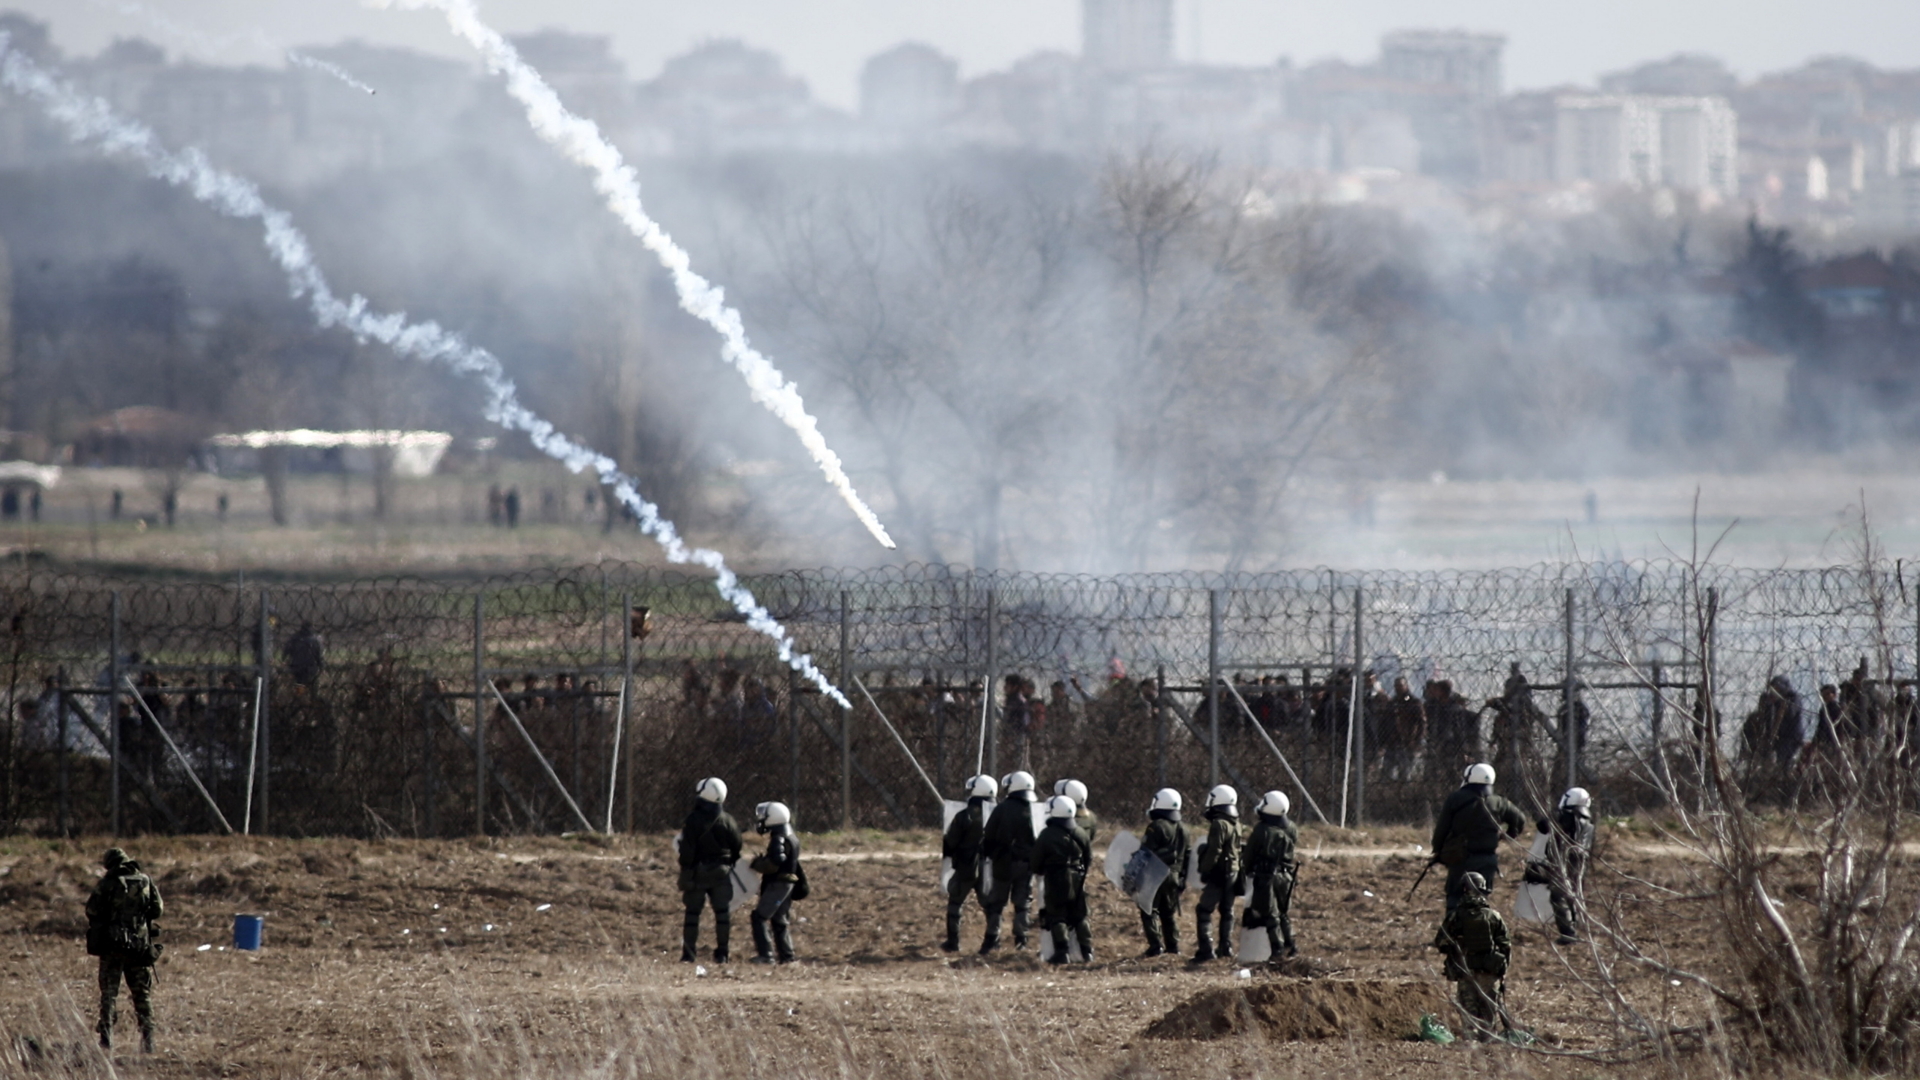 Tränengaseinsatz griechisch-türkische Grenze | dpa